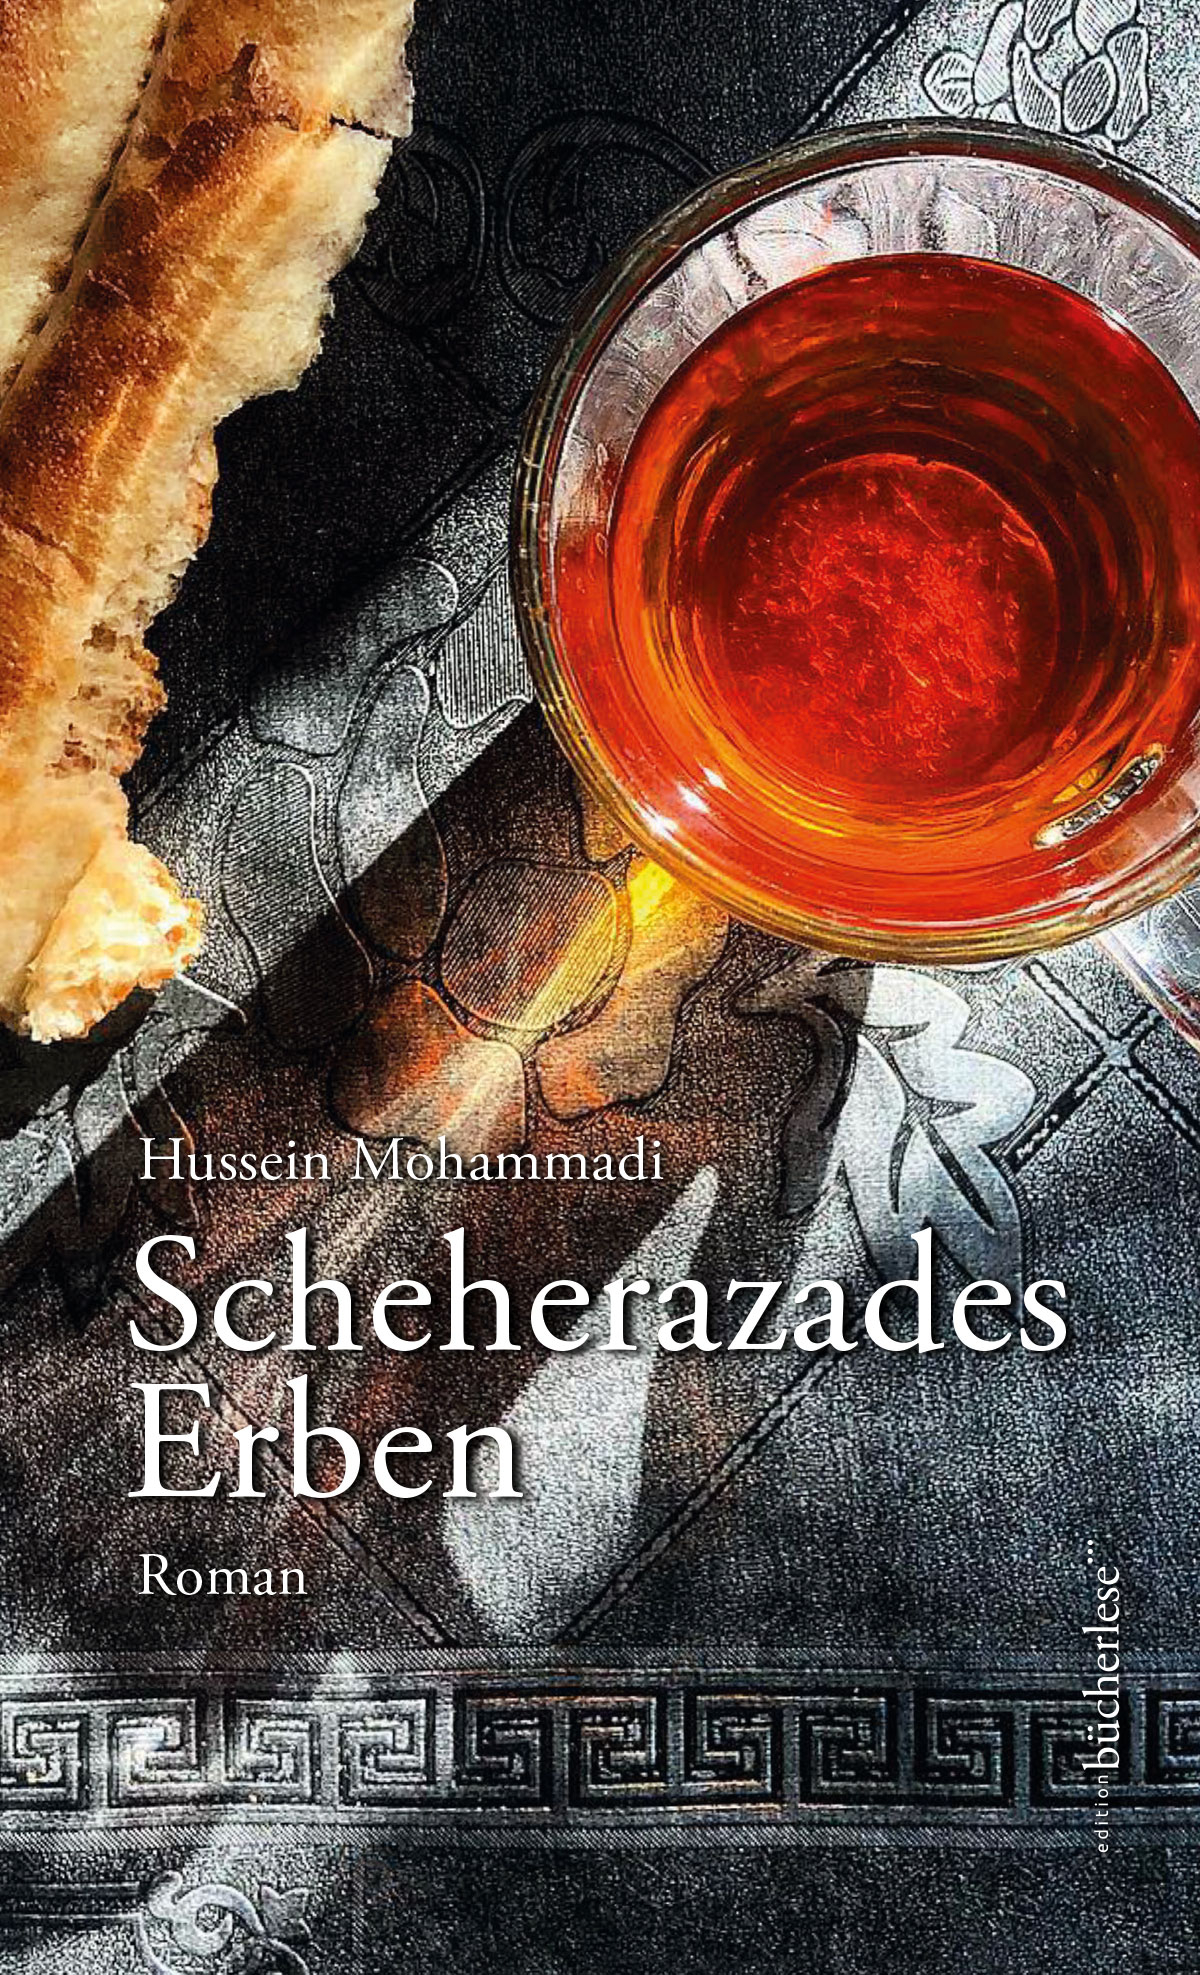 Cover von "Scheherazades Erben" hrsg. von Verlag bücherlese 2022 (Quelle: Verlag)